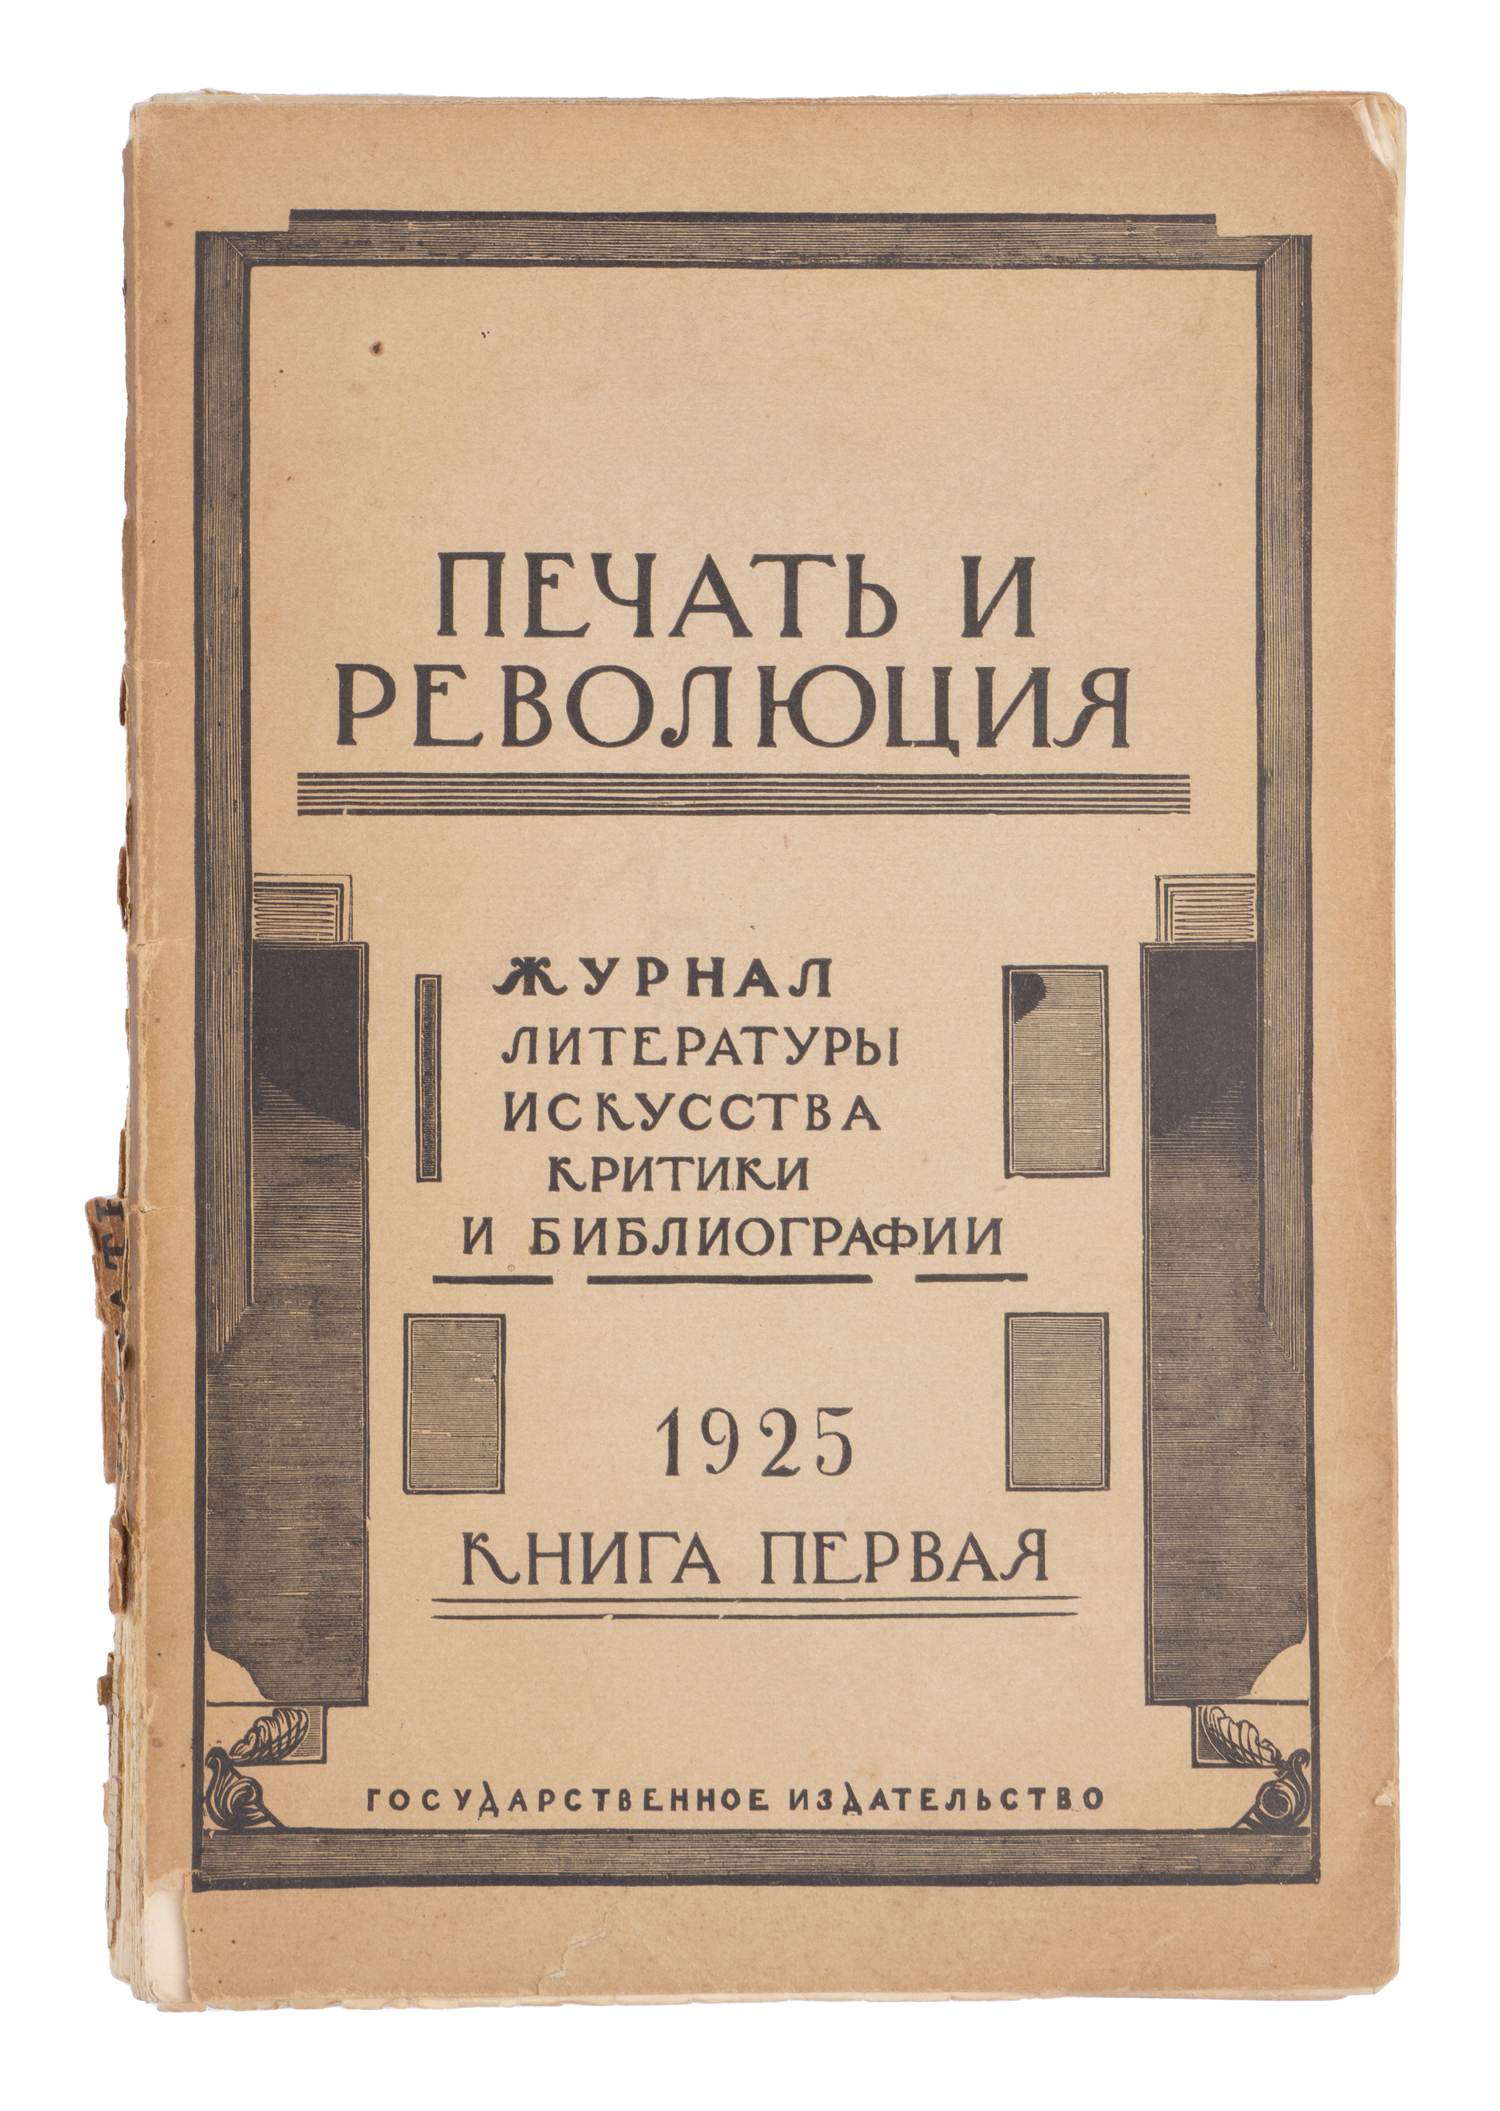 Печать и революция. Журнал литературы, искусства, критики и библиографии. Кн. 1 (М., 1925).